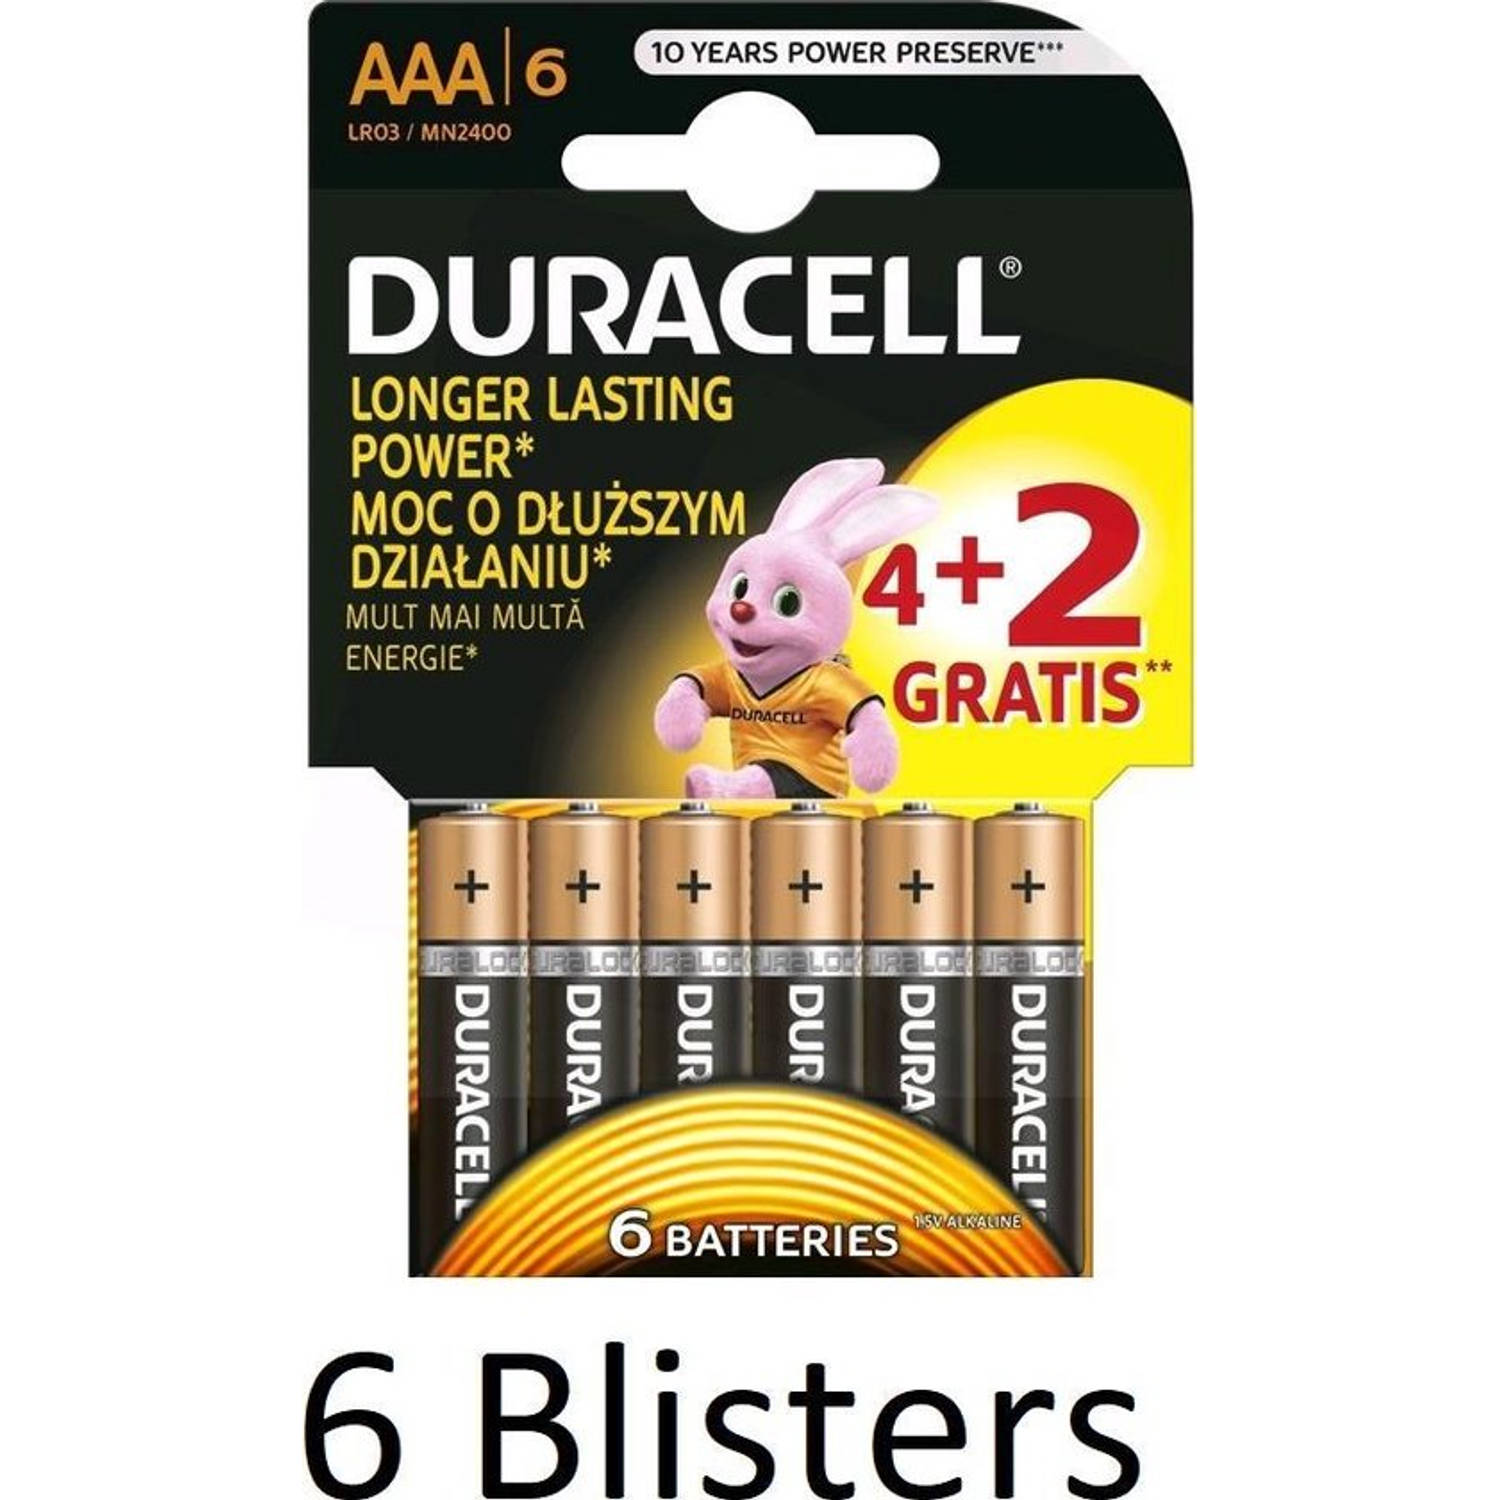 36 Stuks (6 Blisters a 6 st) Duracell Batterijen AAA